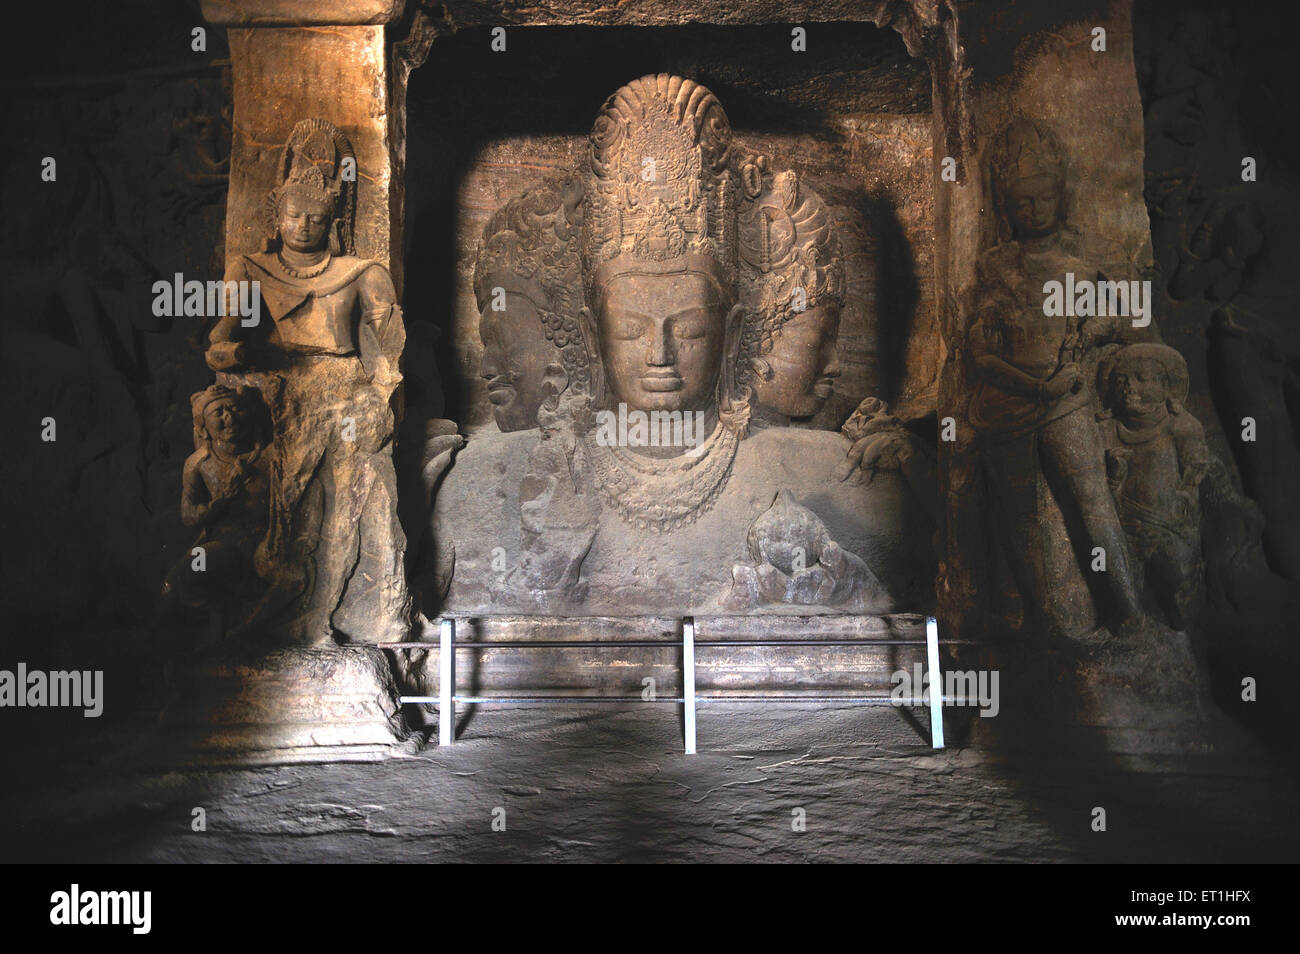 Statue of shiva in elephanta cave Bombay Mumbai Maharashtra India - soa 169243 Stock Photo